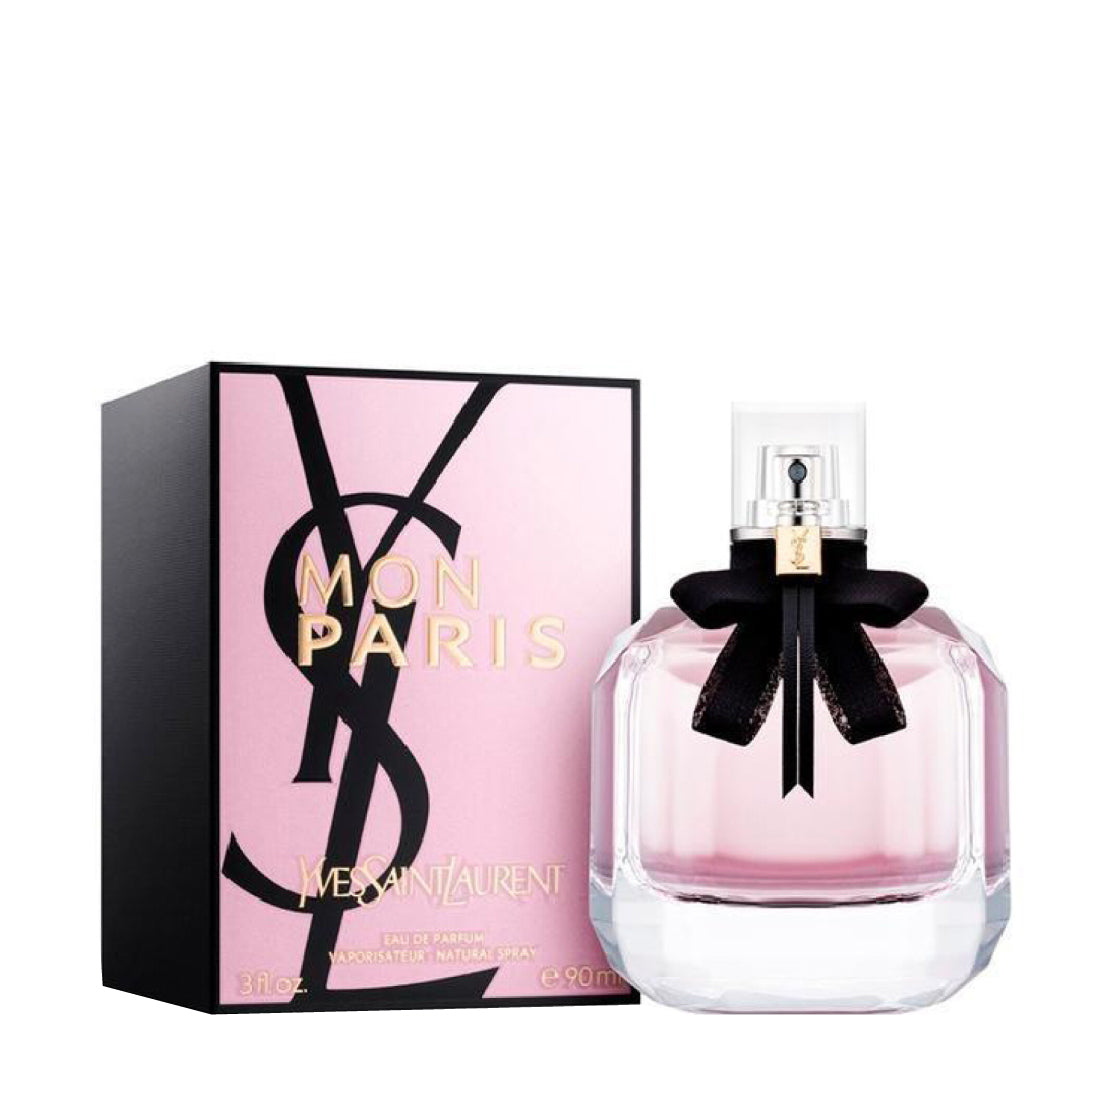 Mon Paris Eau de Parfum Women's Perfume